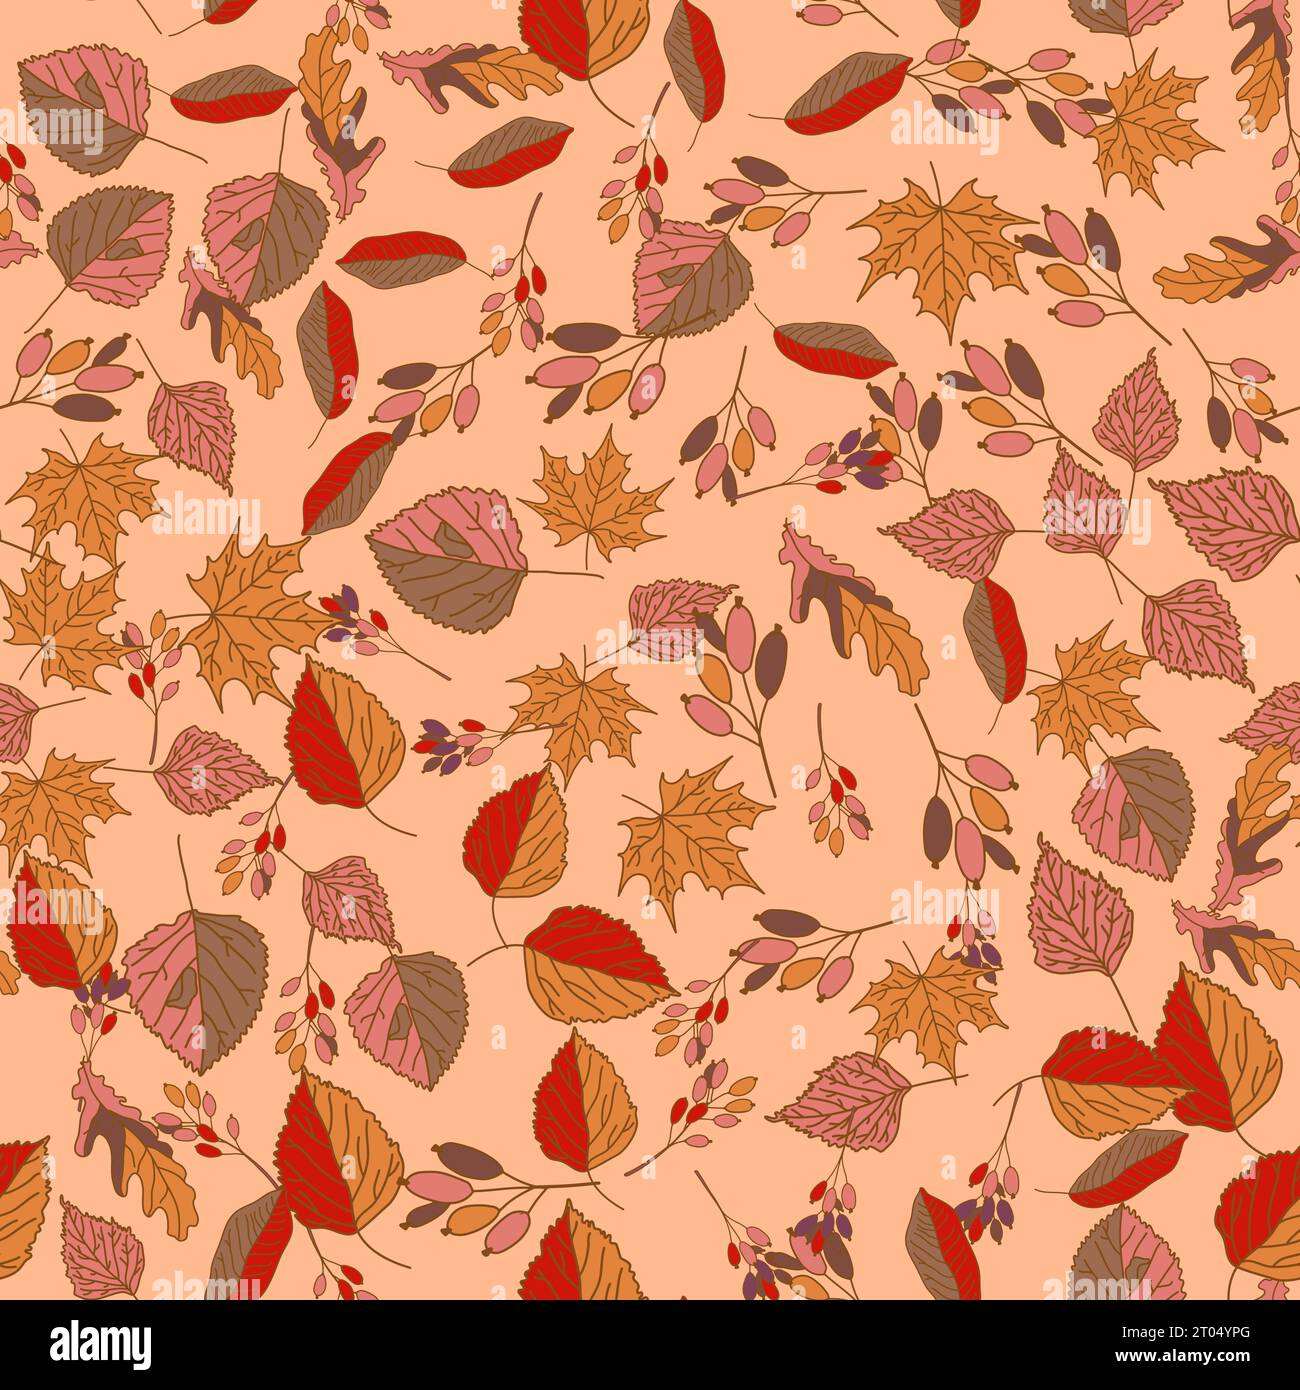 Vektor Hand gezeichnetes nahtloses Muster von Herbstblättern von Birke, Eiche, Ahorn, Esche Stock Vektor